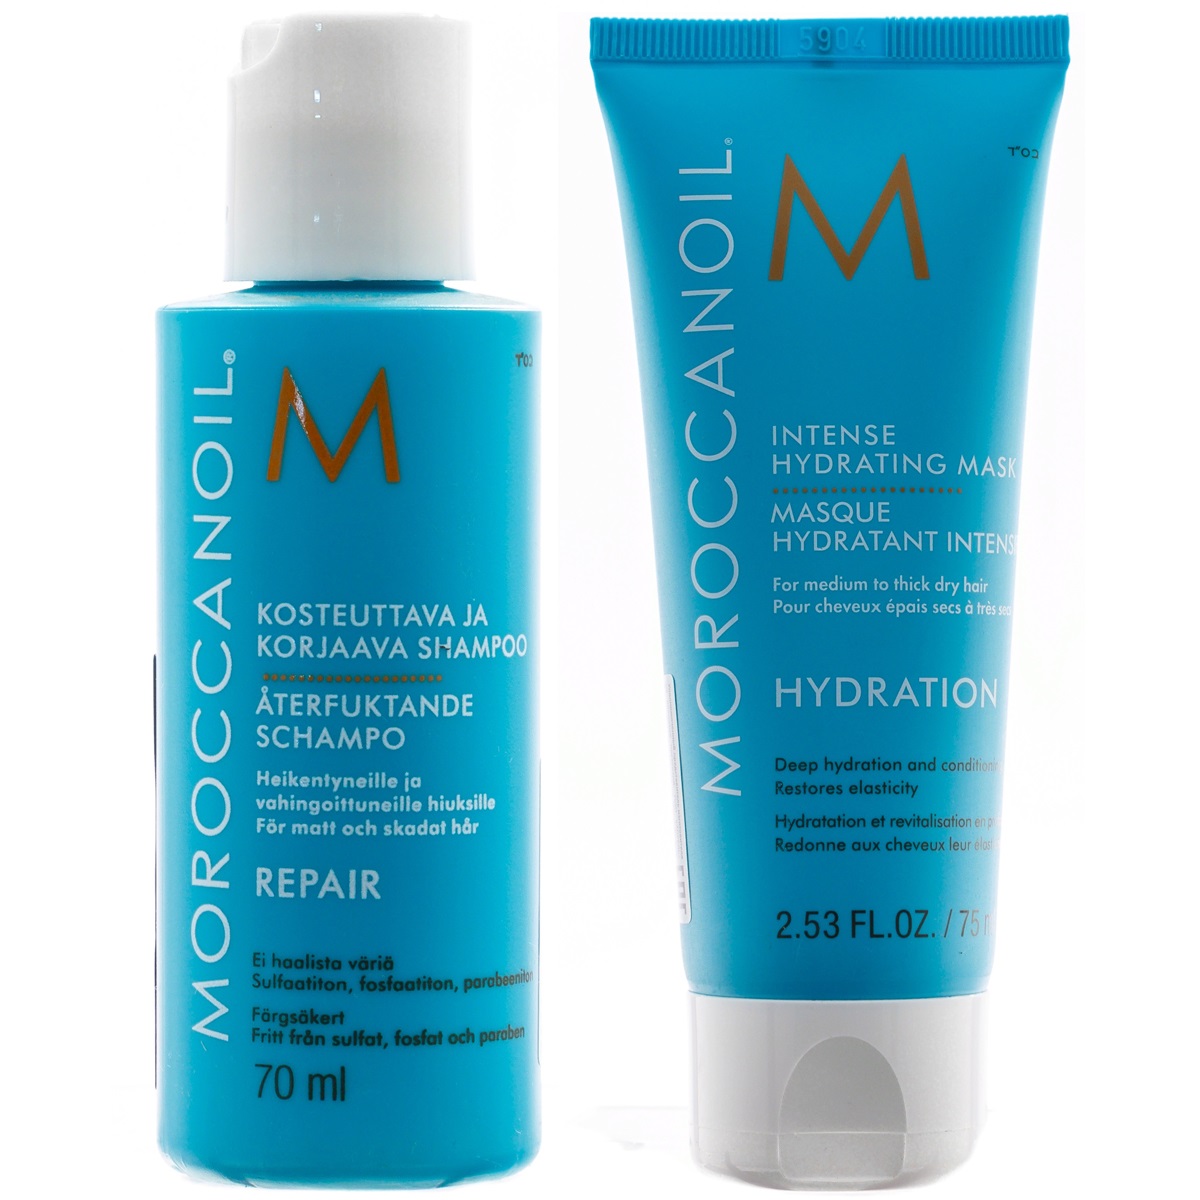 Moroccanoil Набор Увлажнение для волос: шампунь 70 мл + маска 75 мл (Moroccanoil, Hydration)